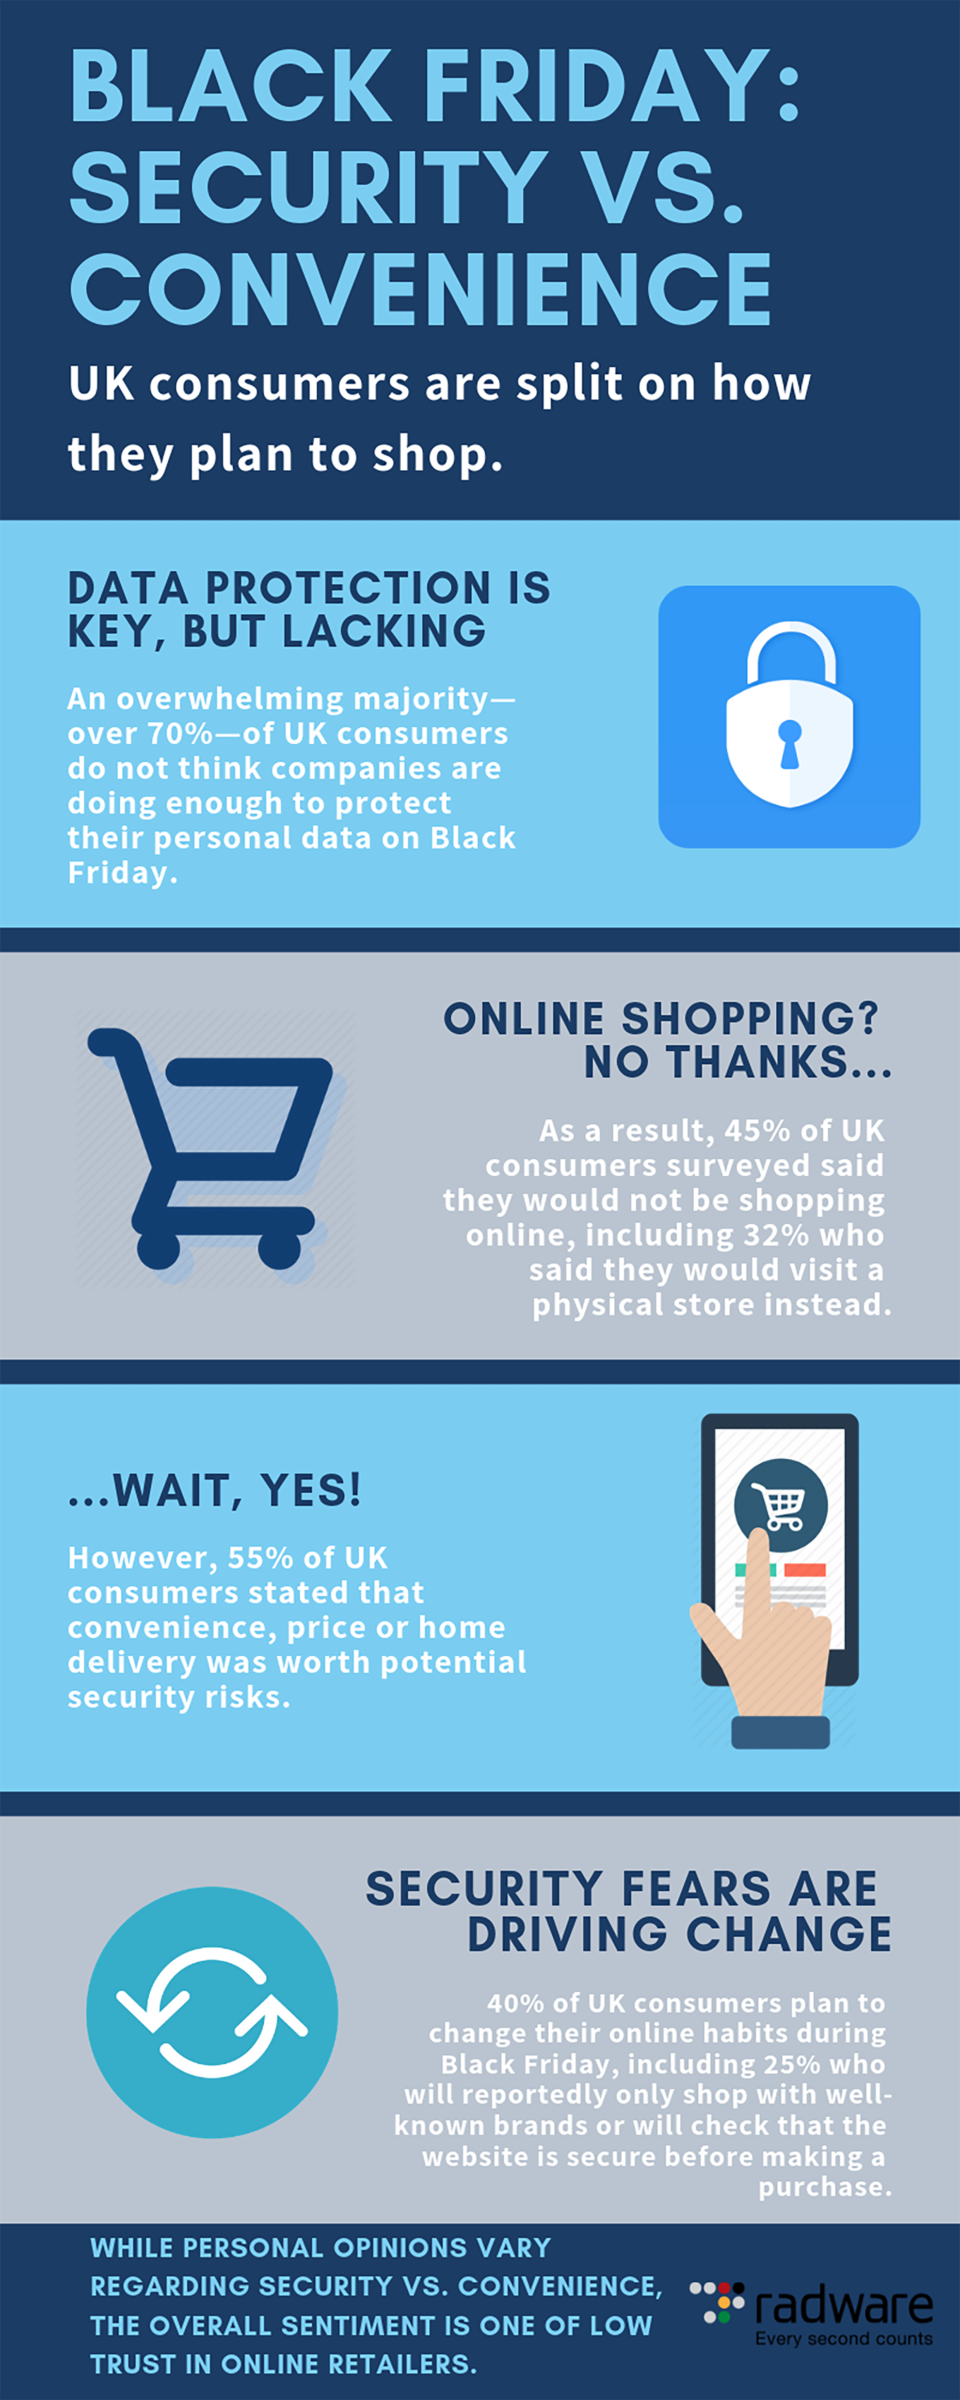 ¿Cuáles son los riesgos de seguridad de las compras en línea?